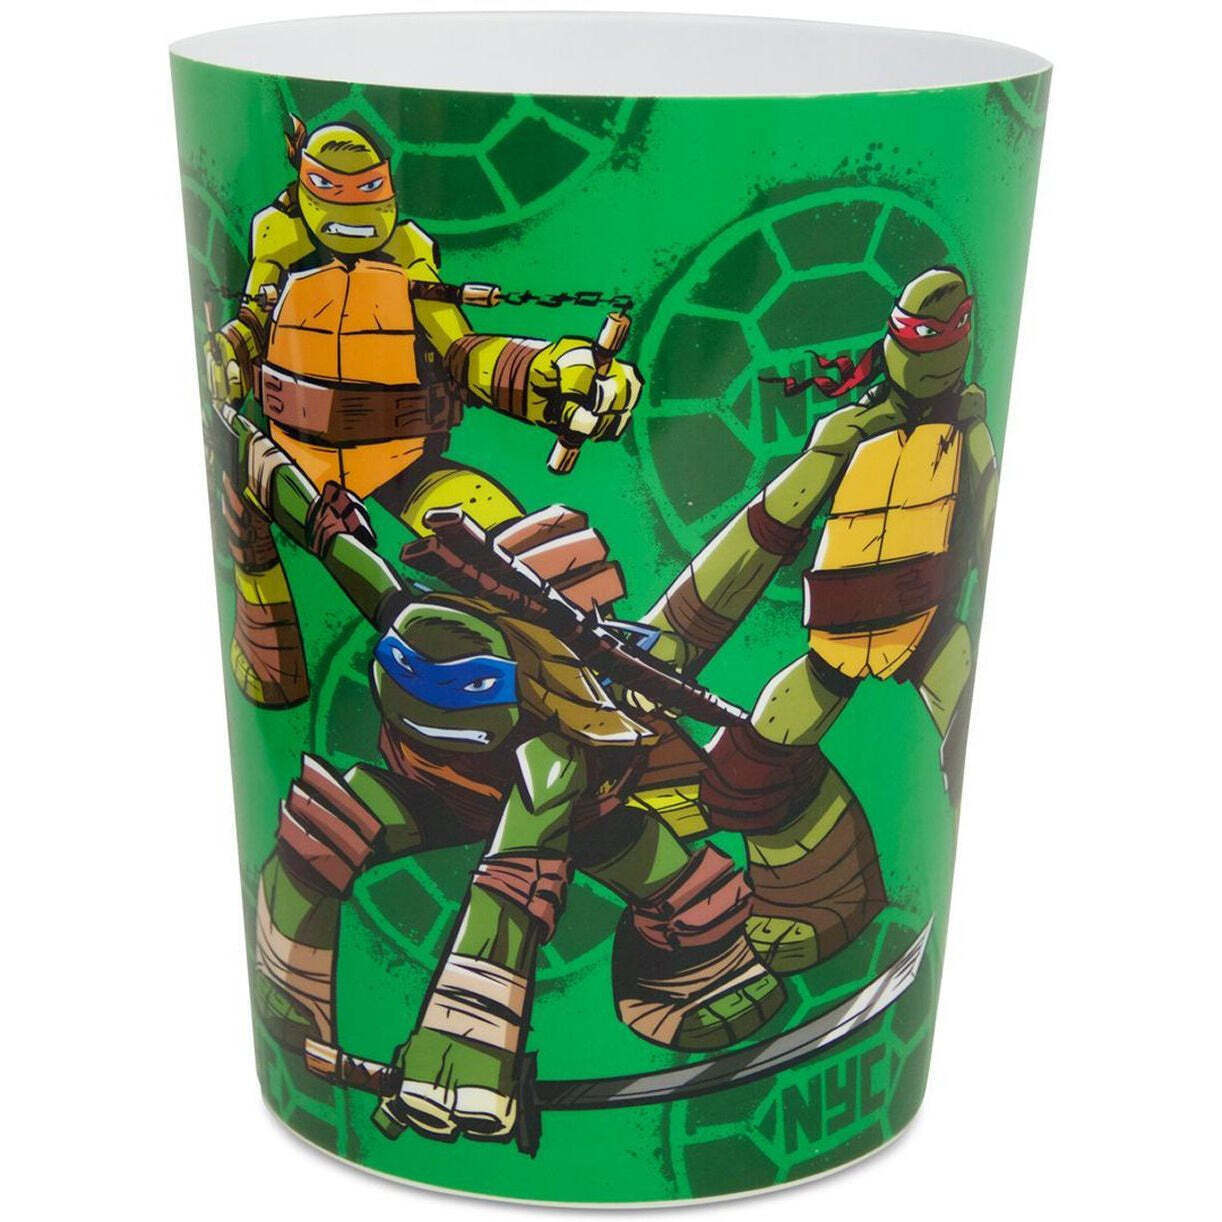 Ninja Turtle Waste Basket Bathroom